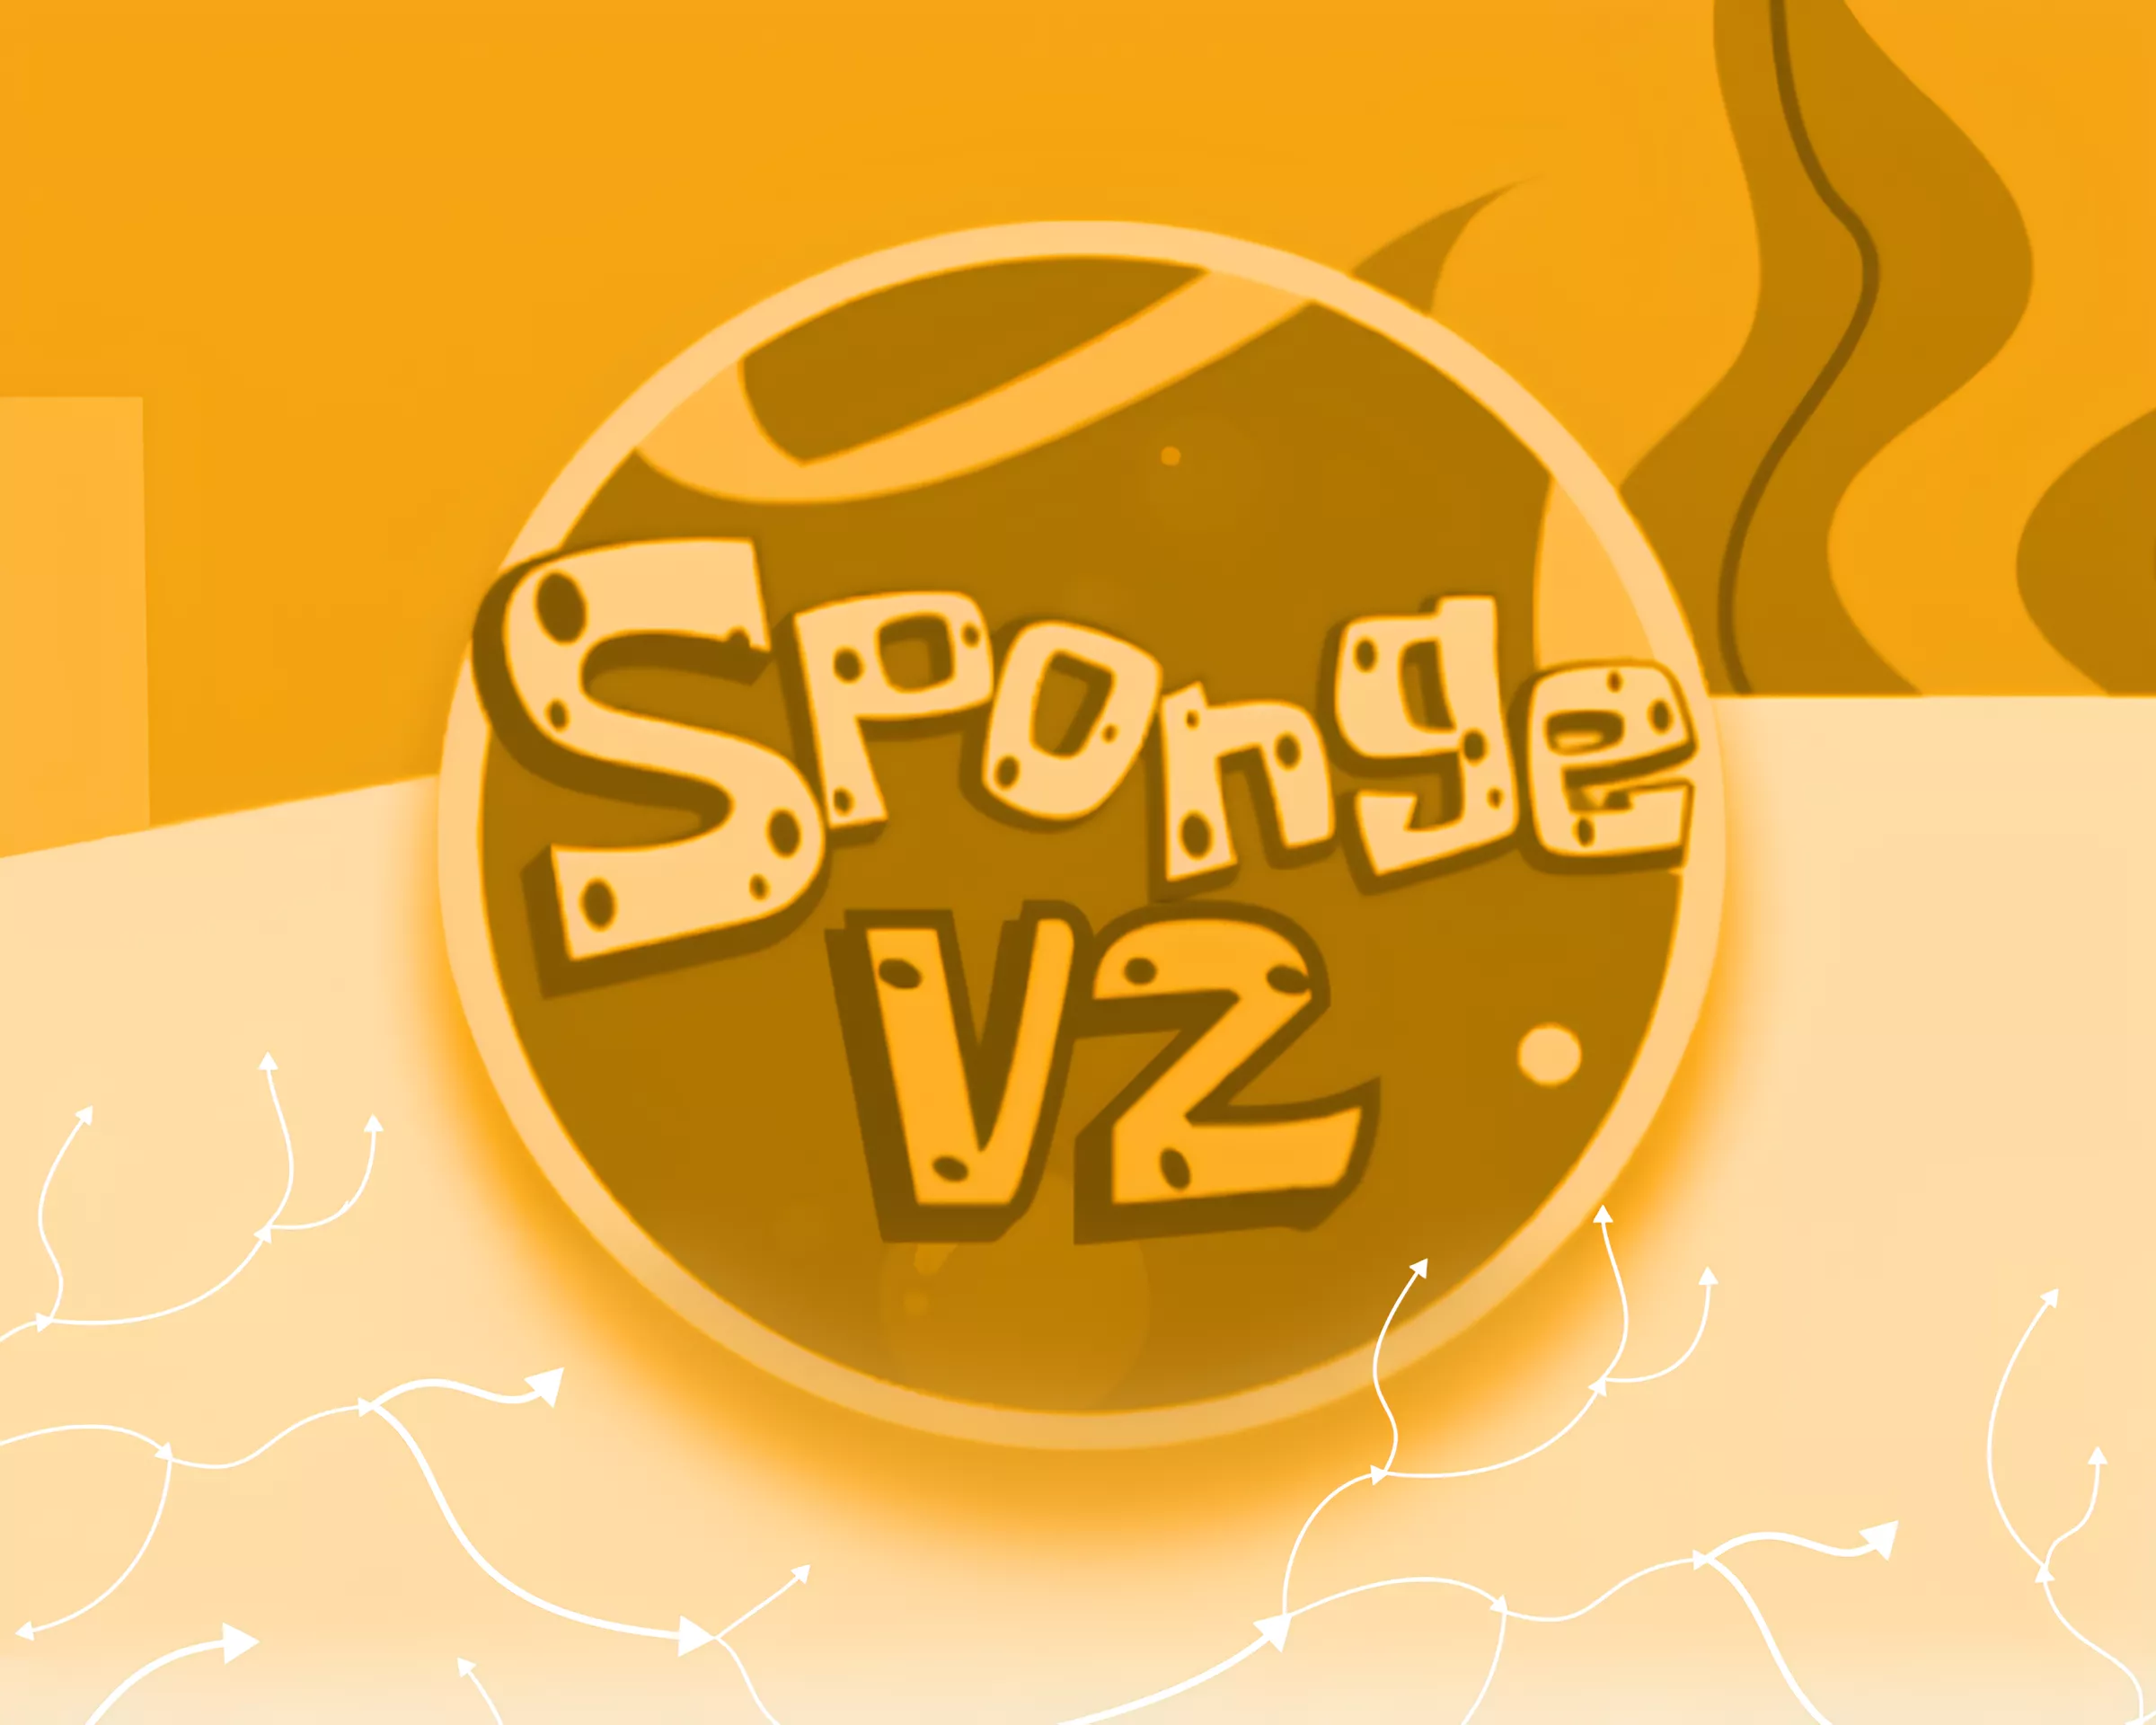 Raspredelenie_SPONGE_V2-1.webp